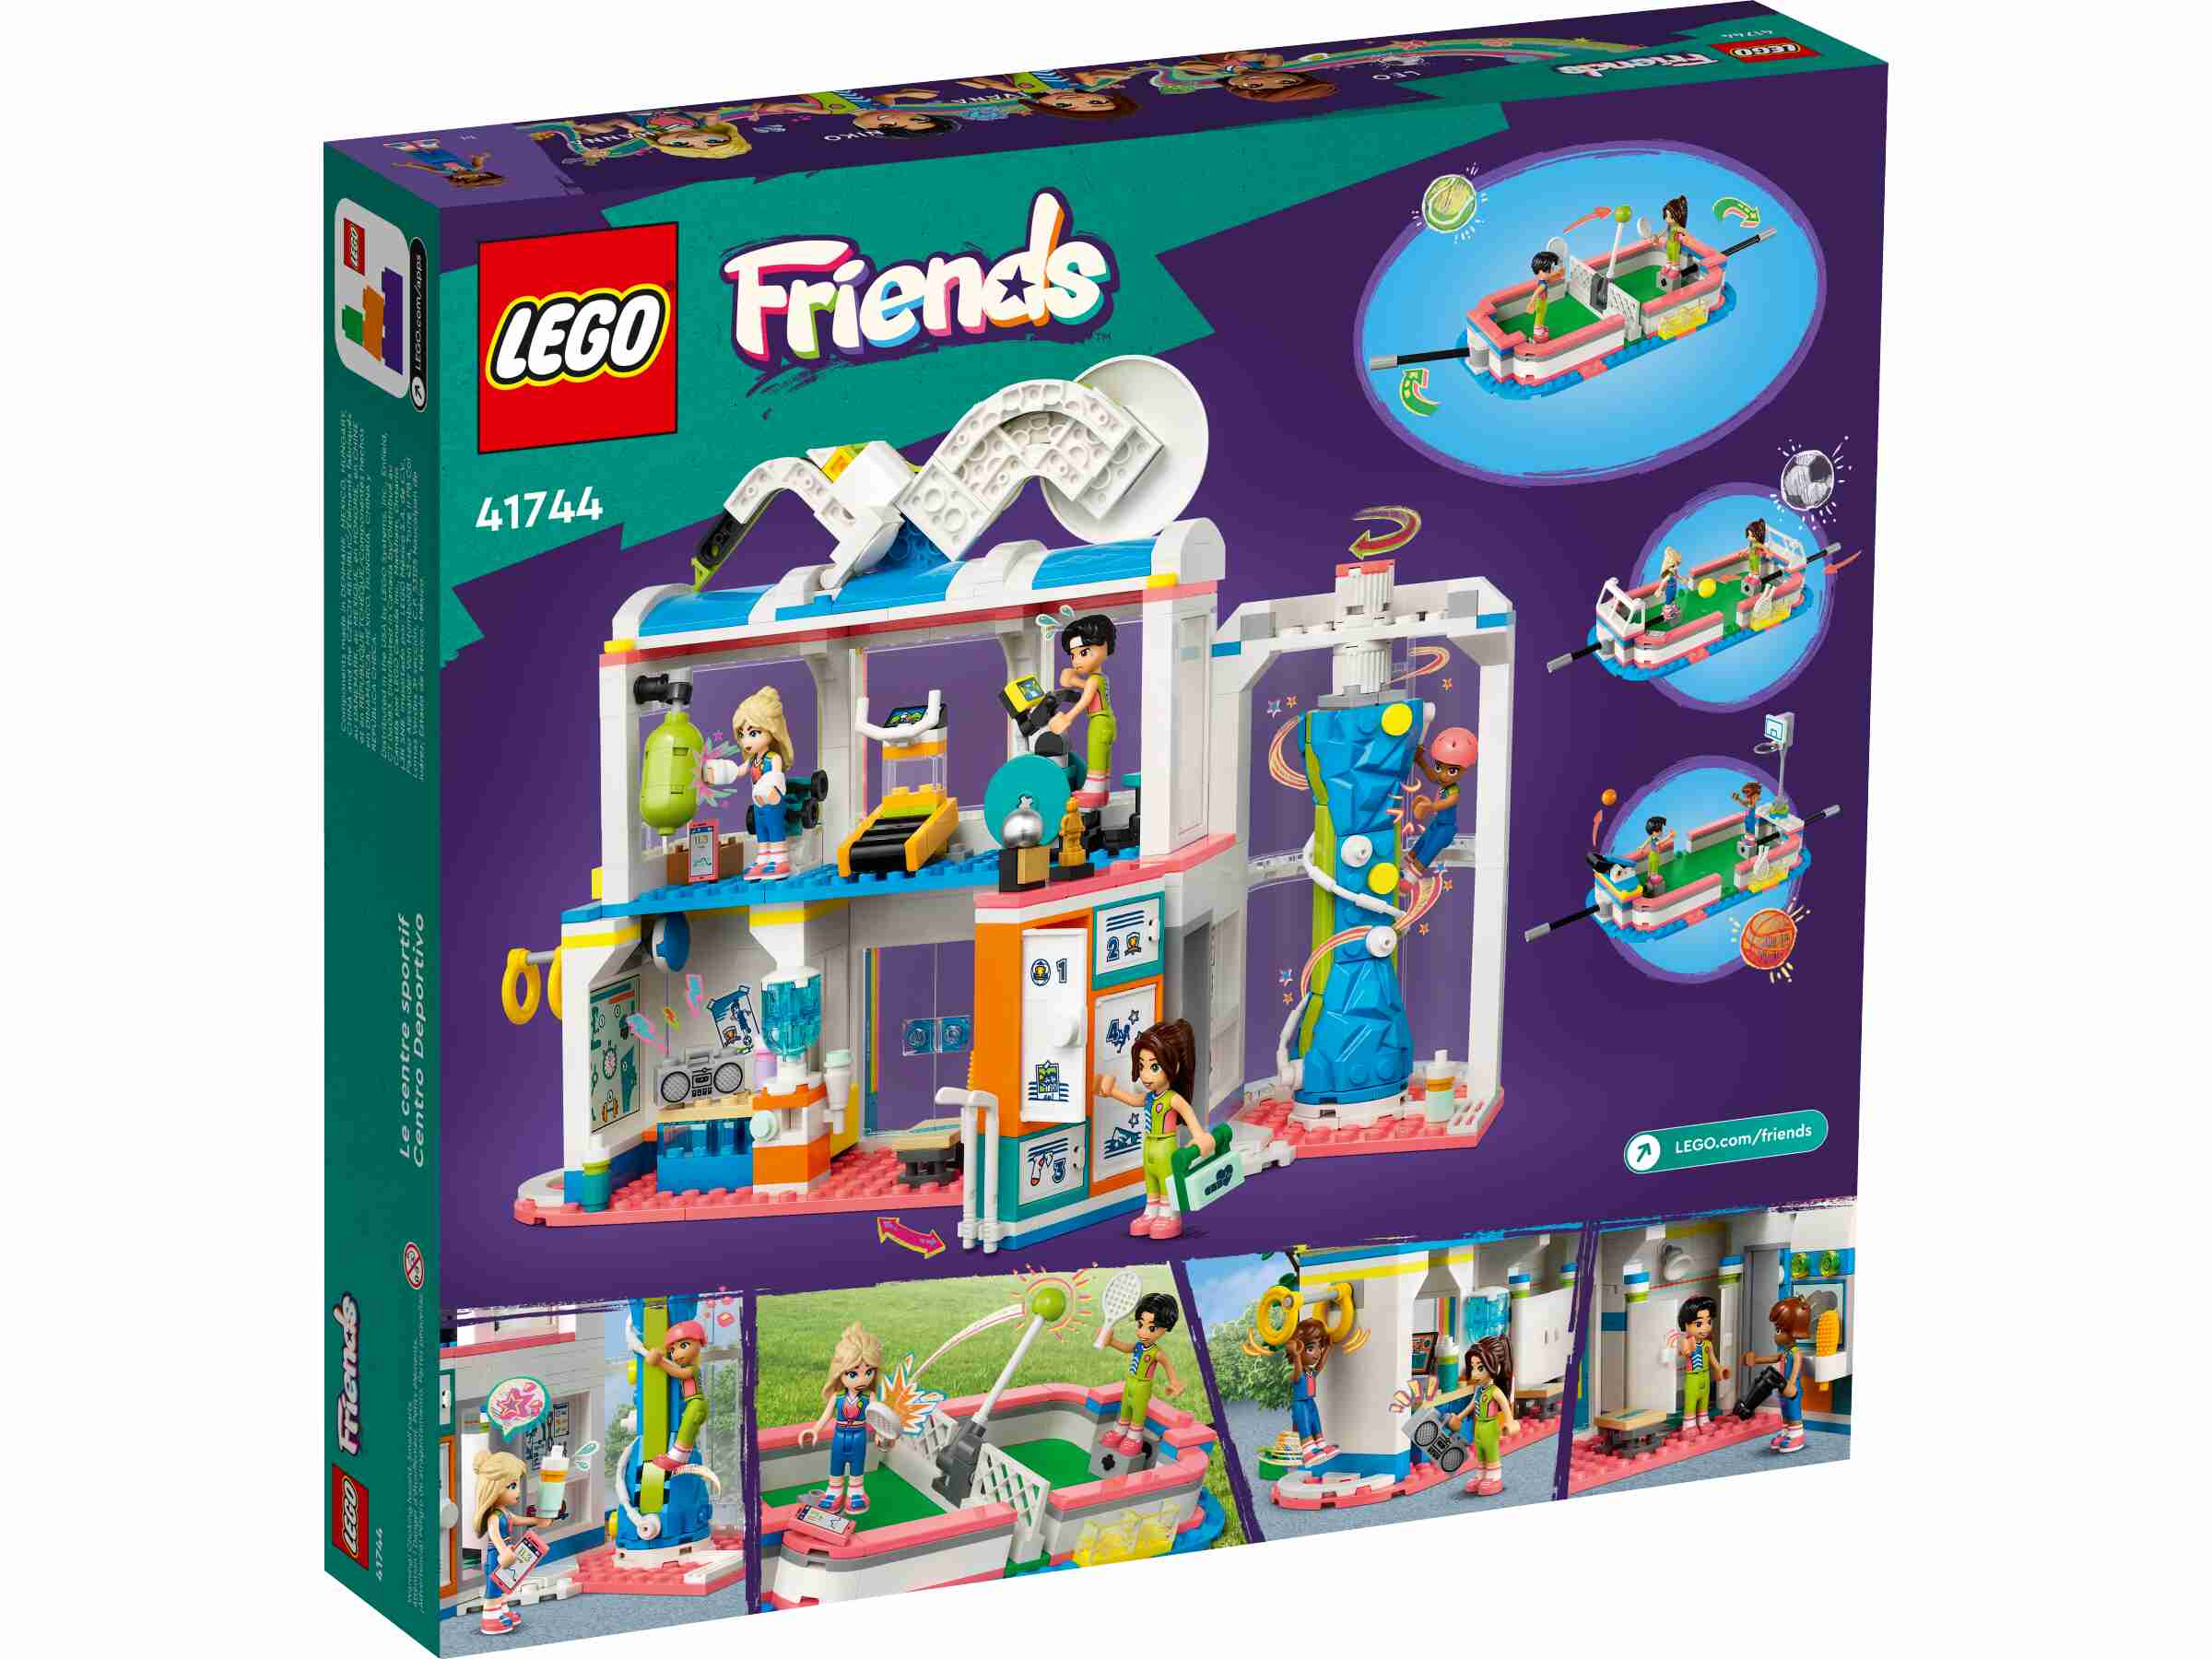 LEGO 41744 Friends Sportzentrum, 4 Spielfiguren, Fußball, Basketball und Tennis